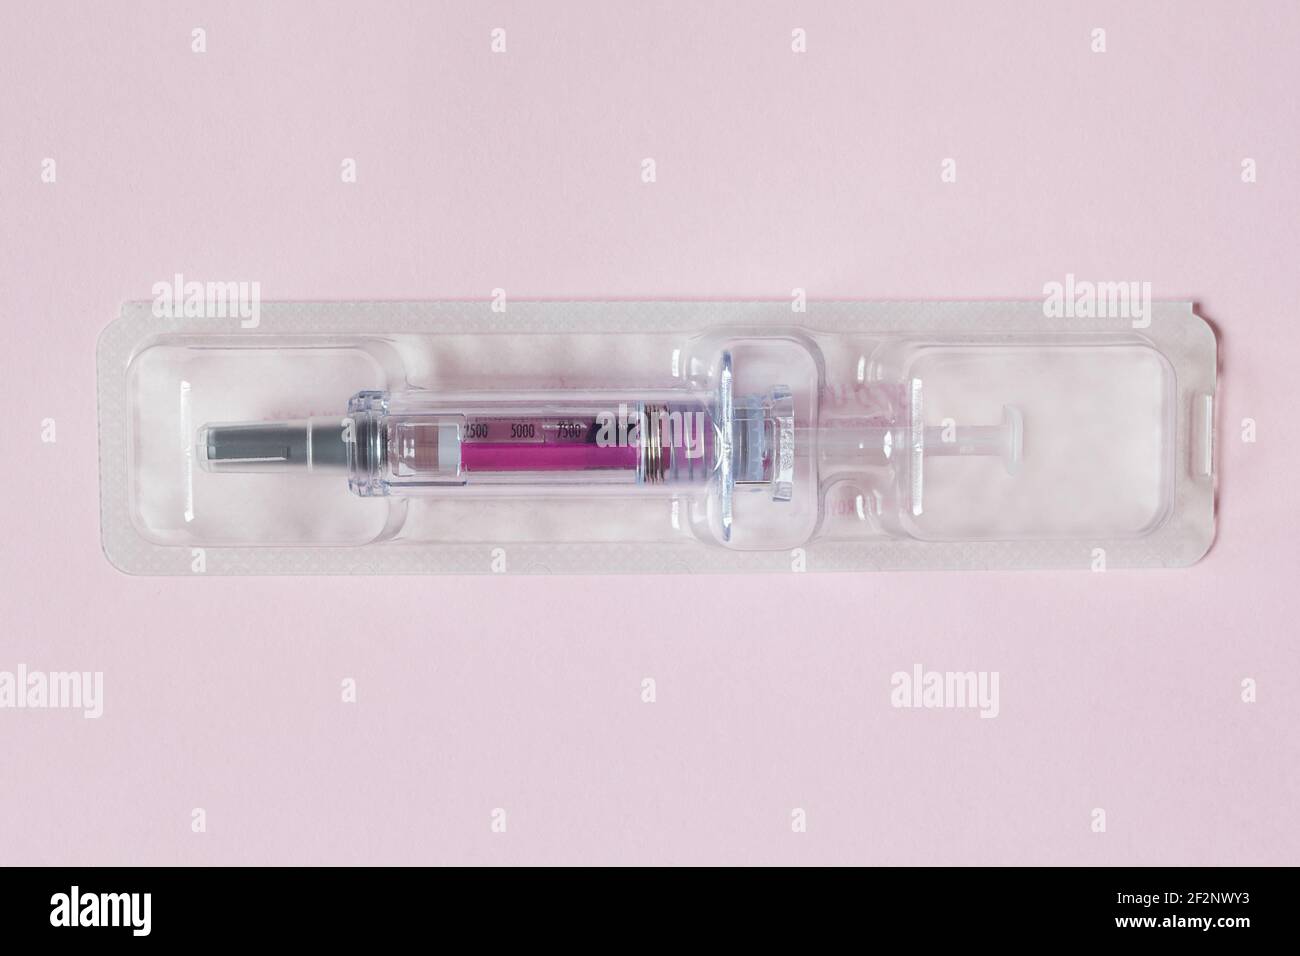 Einzeln versiegelte Spritze mit einer medizinischen Lösung in einem Kunststoff-Blister auf einem strukturierten rosa Papier Hintergrund vorgefüllt. Wissenschaft Gesundheit und Medizin. Stockfoto